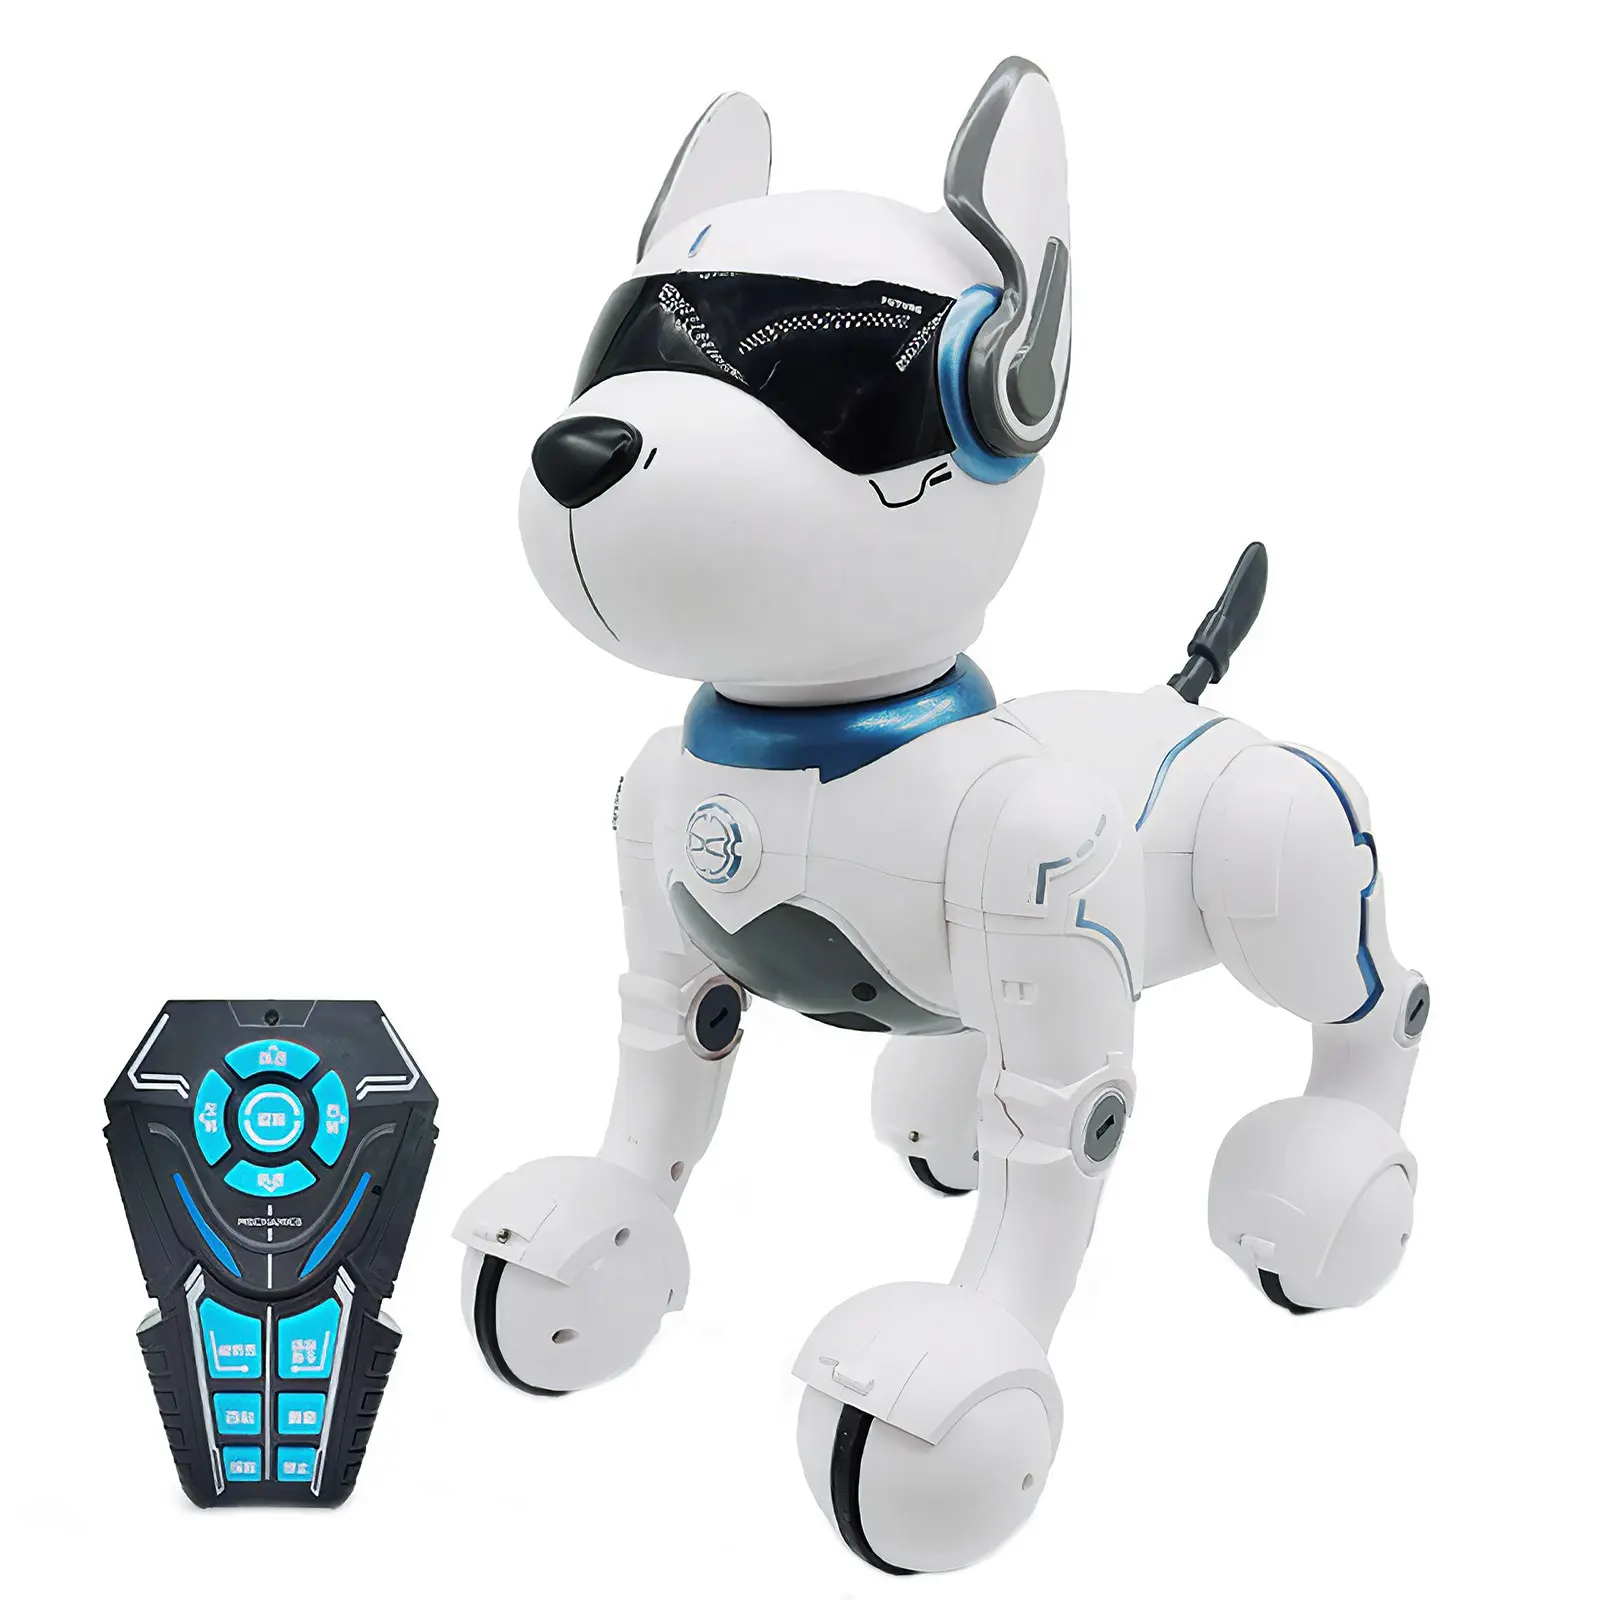 Heißer Verkauf Roboter Kinderspiel zeug Intelligente Sprach steuerung Sprache Leidy Dog Controlled Stunt Rc Roboter Hund Smart Toys